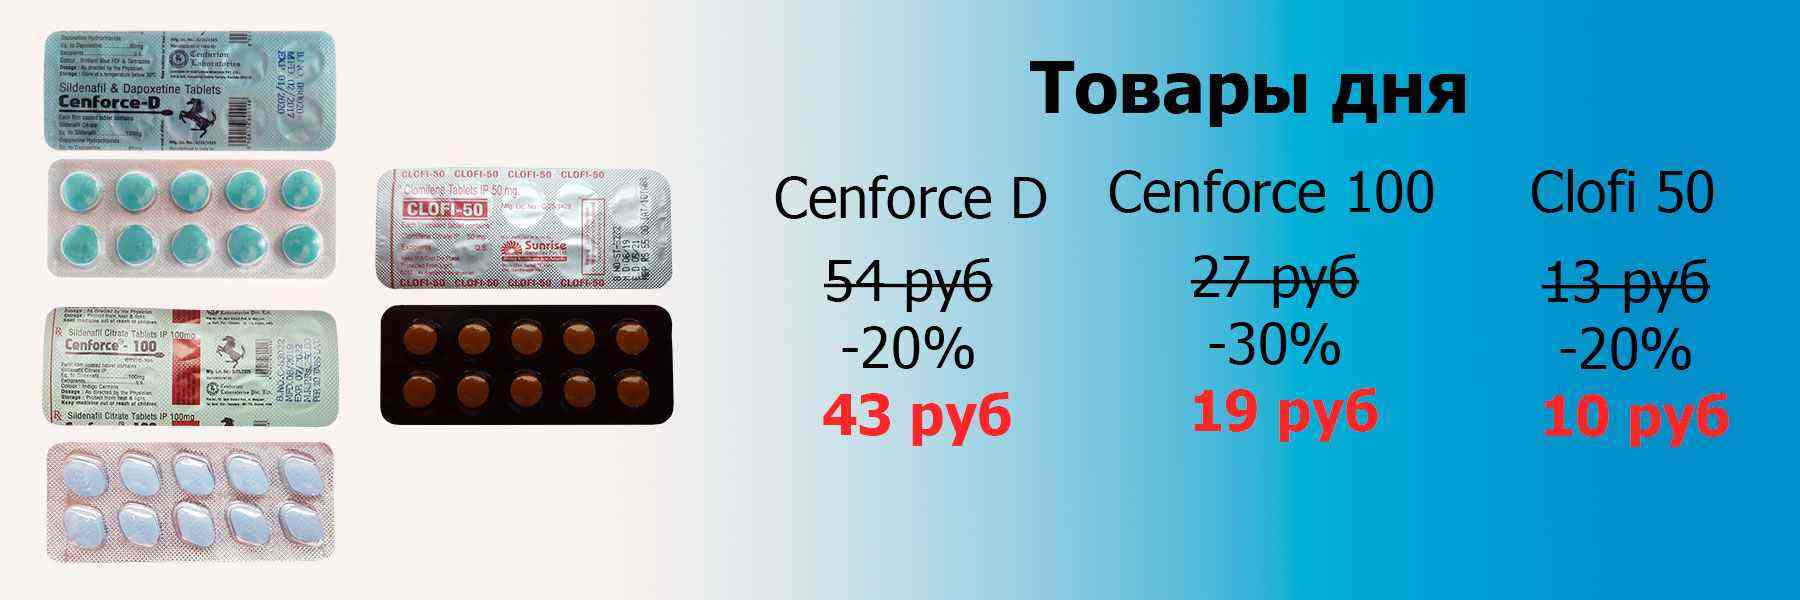 Cenforce-D-Cenforce-100-Clofi-50.jpg